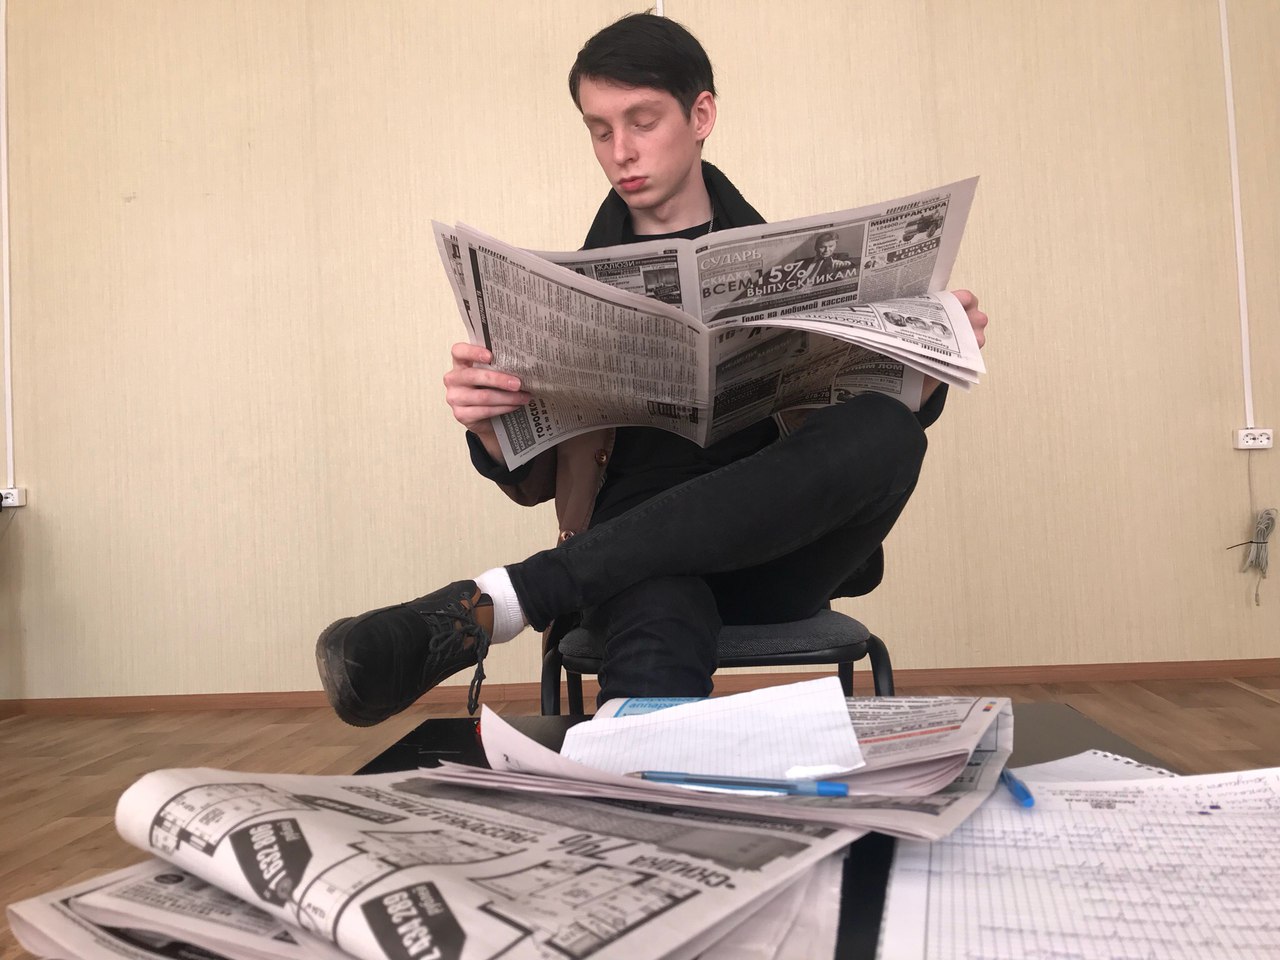 Электронная газета новостей. Мужчина с газетой. Чтение газеты. Читает газету. Человек читает газету.